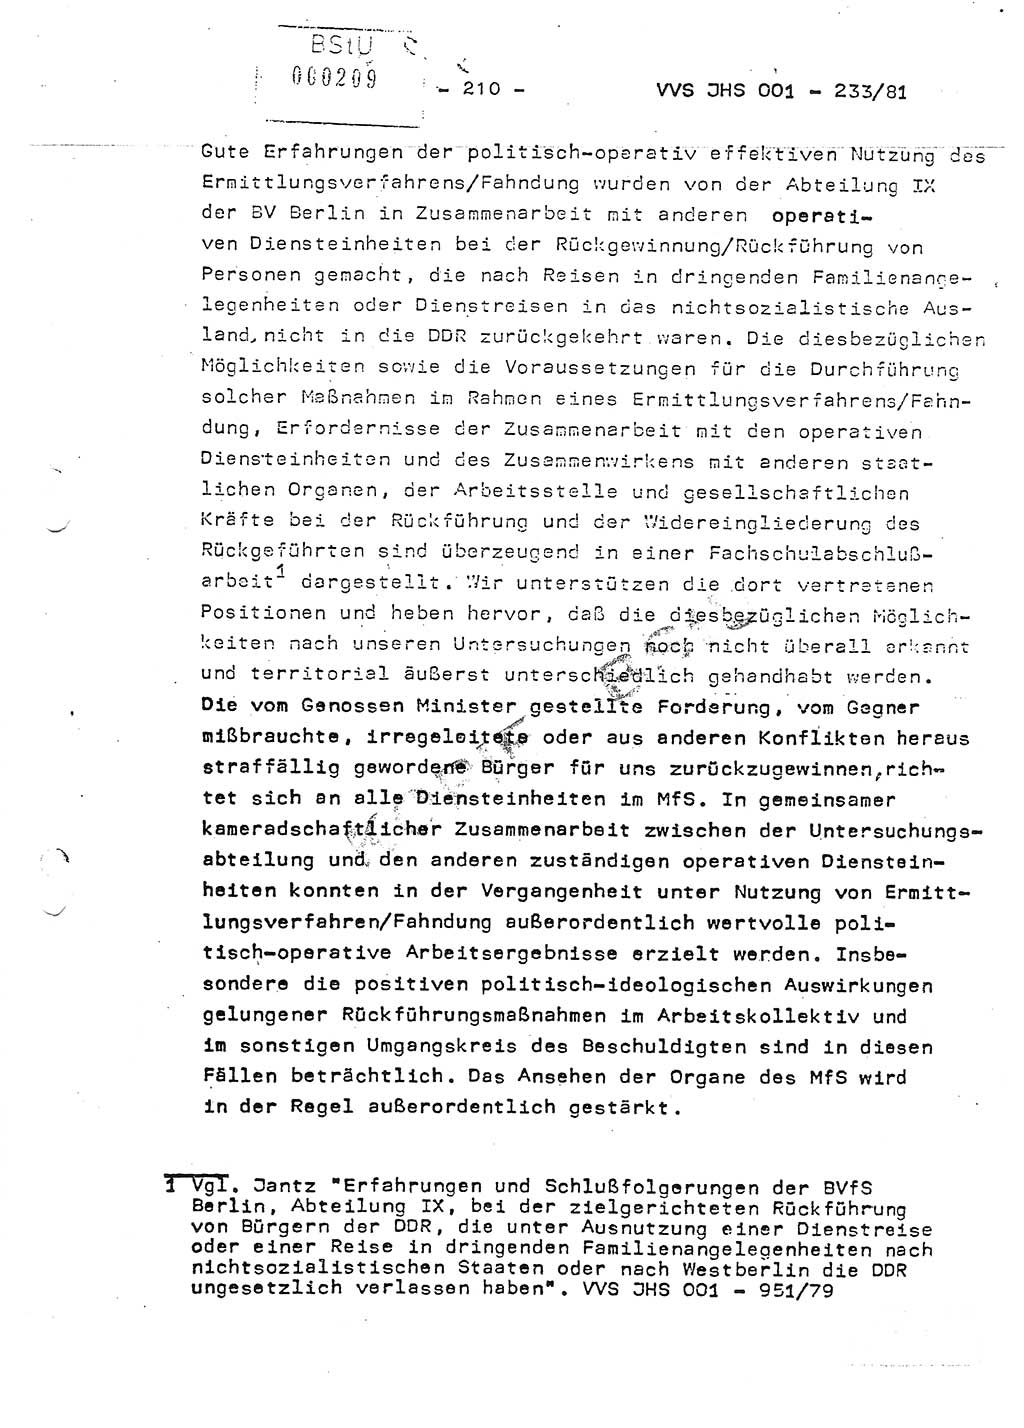 Dissertation Oberstleutnant Horst Zank (JHS), Oberstleutnant Dr. Karl-Heinz Knoblauch (JHS), Oberstleutnant Gustav-Adolf Kowalewski (HA Ⅸ), Oberstleutnant Wolfgang Plötner (HA Ⅸ), Ministerium für Staatssicherheit (MfS) [Deutsche Demokratische Republik (DDR)], Juristische Hochschule (JHS), Vertrauliche Verschlußsache (VVS) o001-233/81, Potsdam 1981, Blatt 210 (Diss. MfS DDR JHS VVS o001-233/81 1981, Bl. 210)